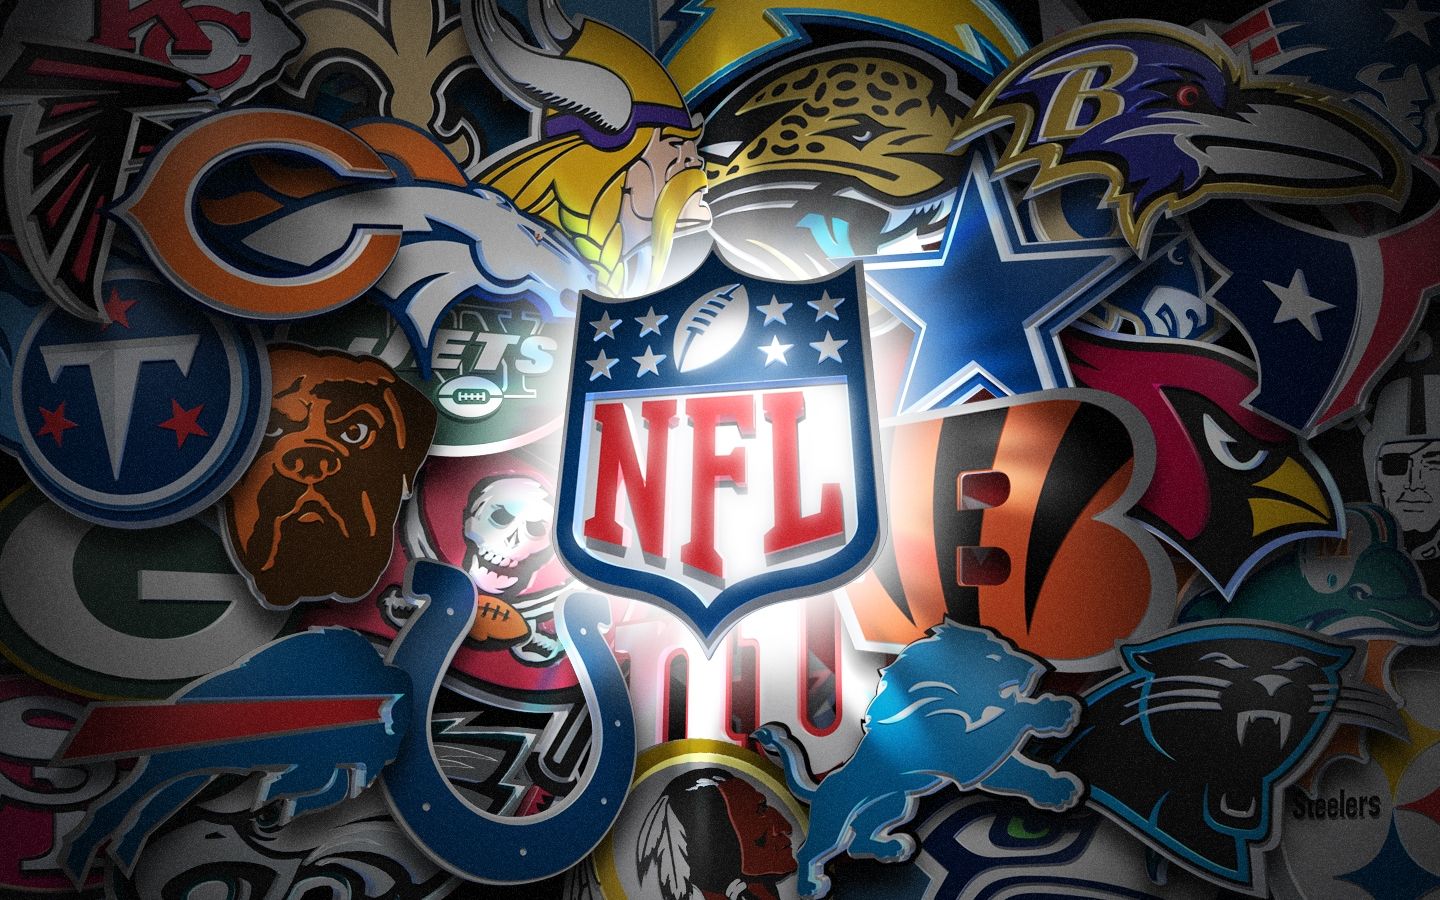 NFL Football Teams Wallpaper